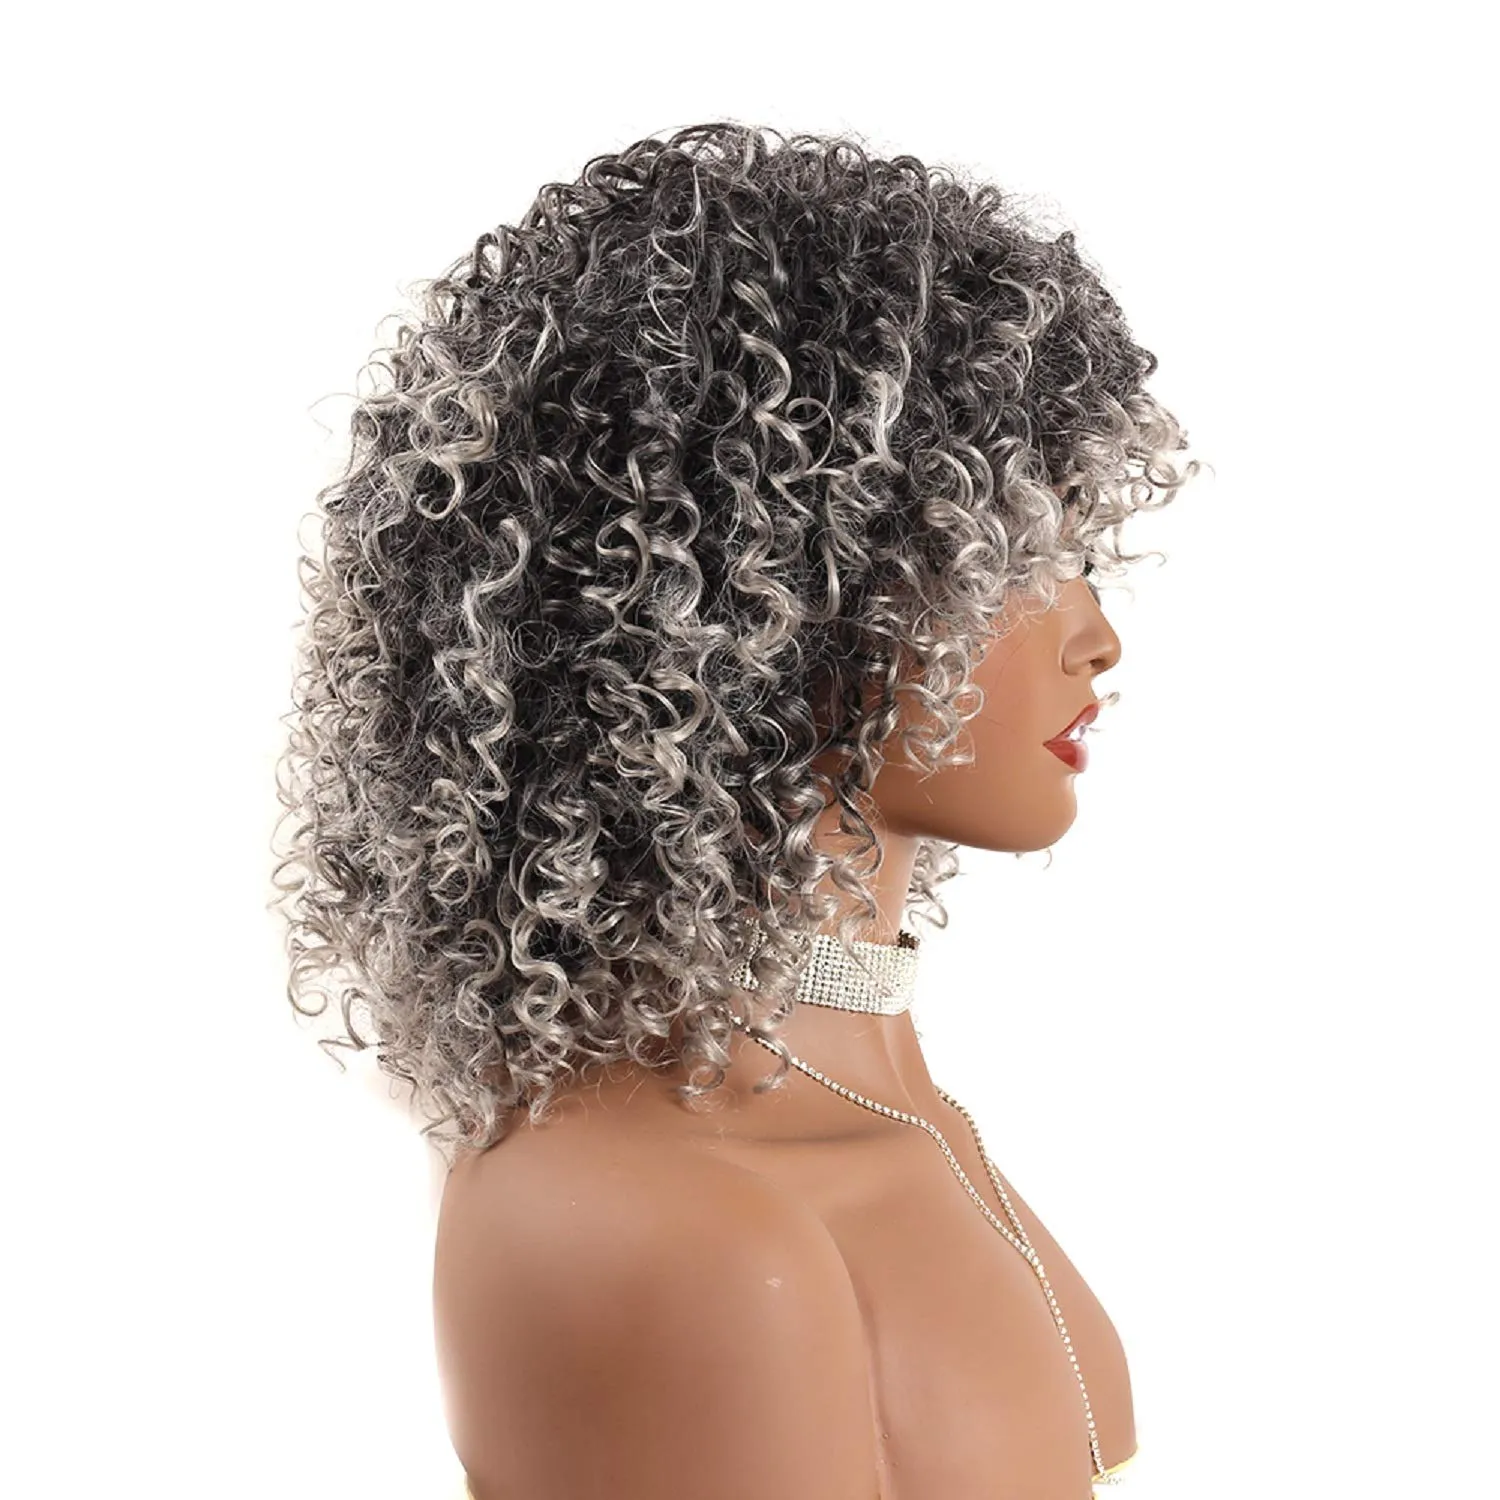 Peluca de pelo rizado afro sintético ondulado esponjoso con flequillo Pelucas rizadas rizadas para mujeres negras Pelucas grises ombre para uso diariofactory direct3699776